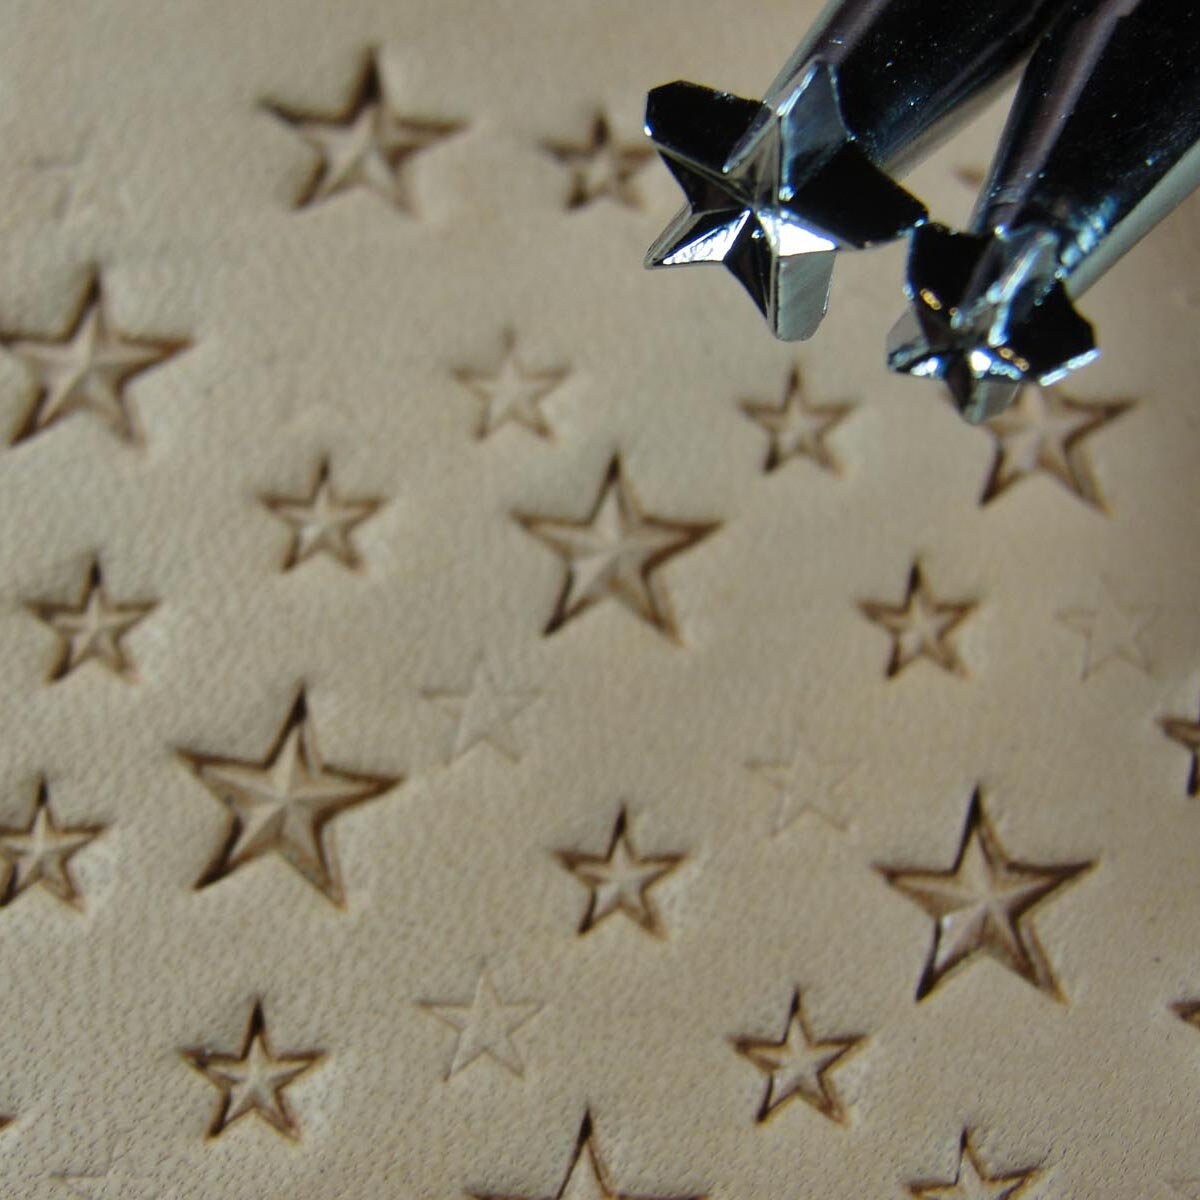 Star 5-Point 3-D Z610 Z609 2-Piece Leather Stamp Set –